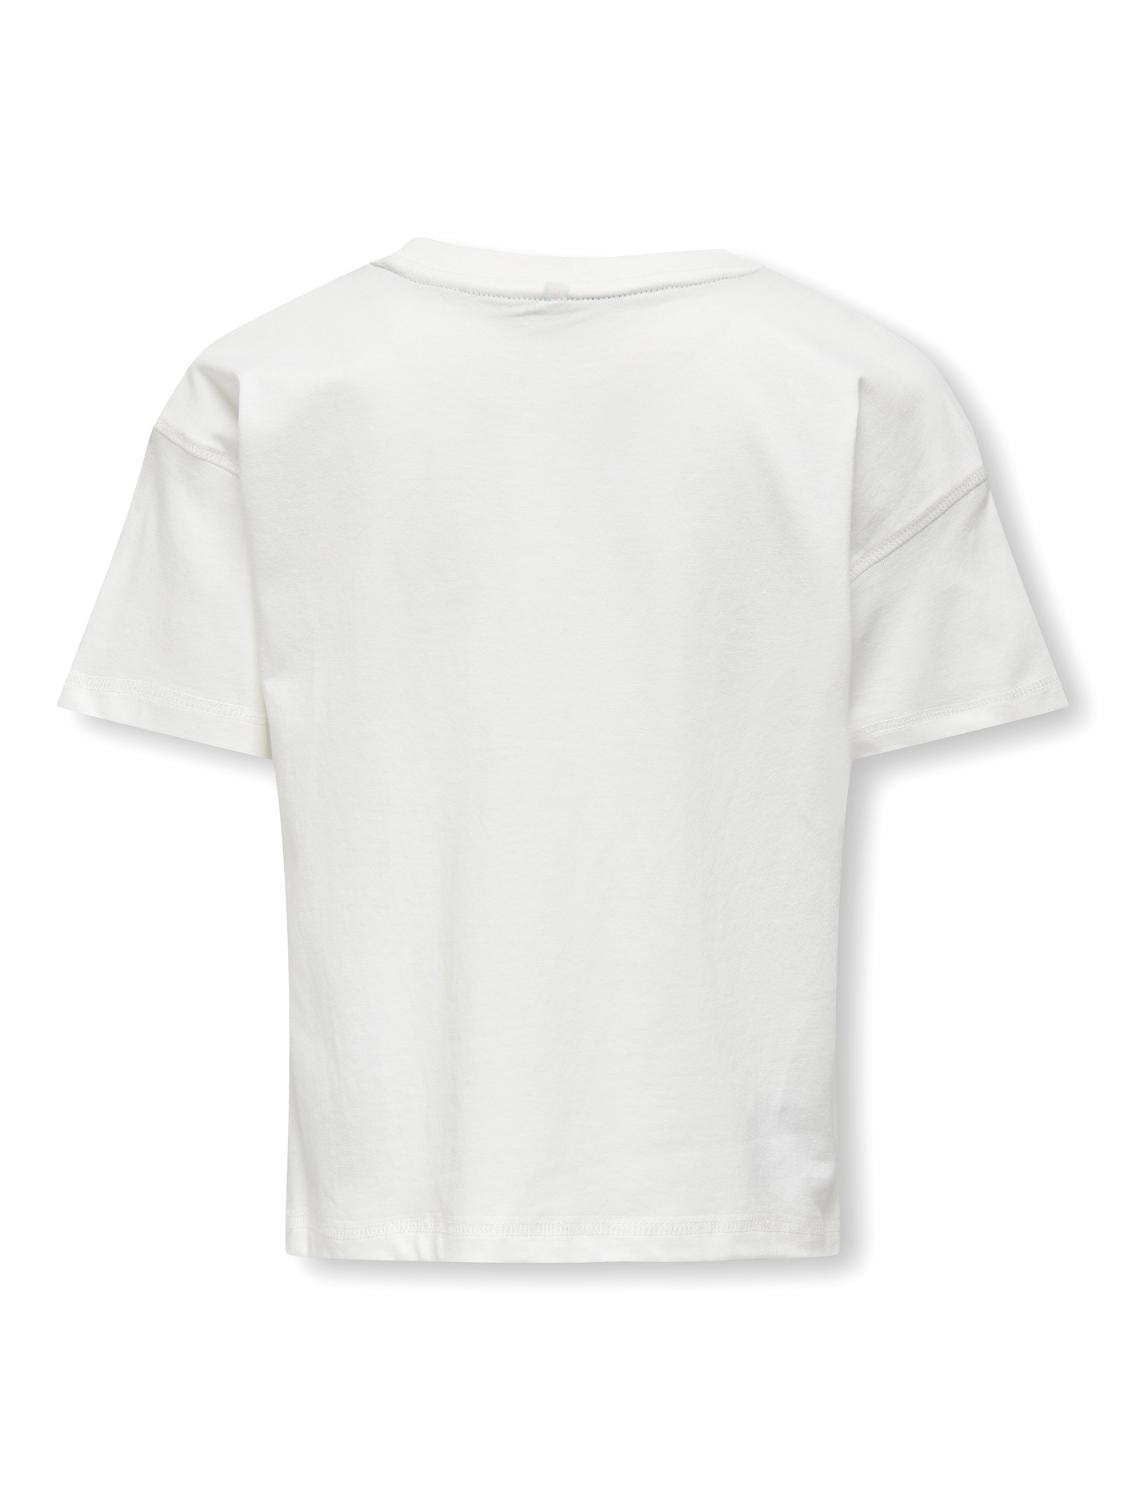 ONLY Normal geschnitten Rundhals T-Shirt -Cloud Dancer - 15322471